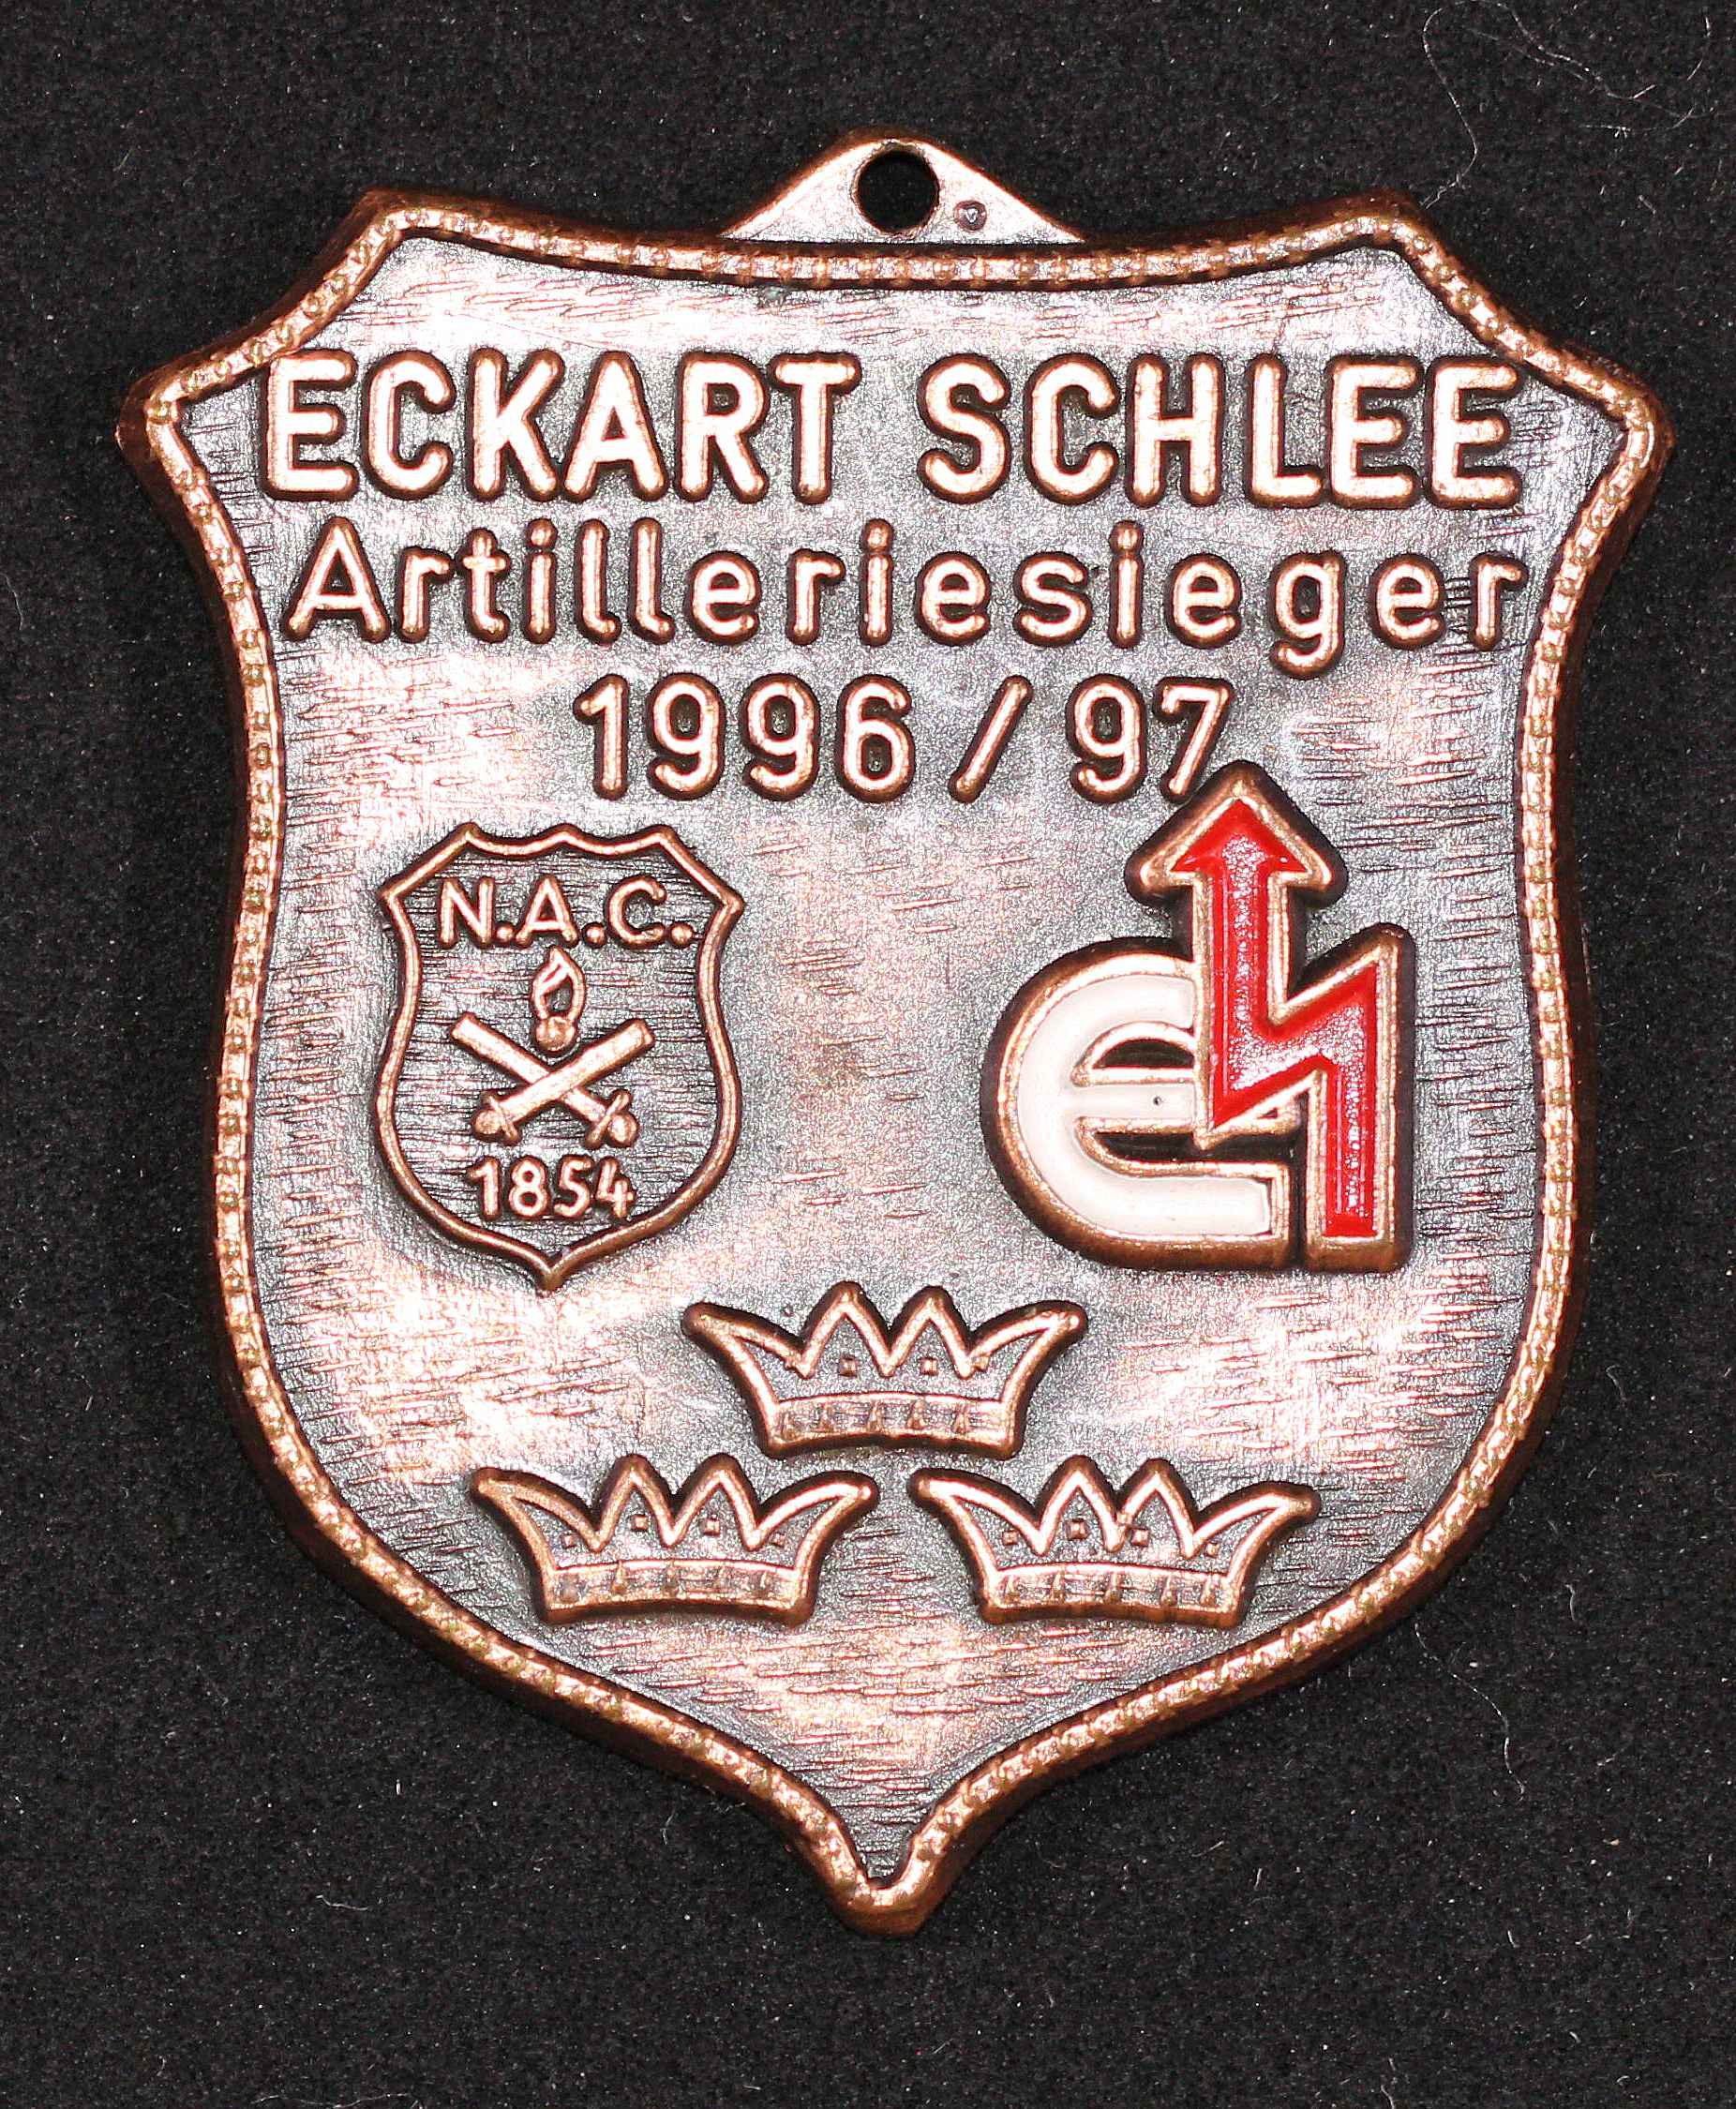 Orden Artilleriesieger Neuss 1996/97 Eckart Schlee (Rheinisches Schützenmuseum Neuss CC BY-NC-SA)